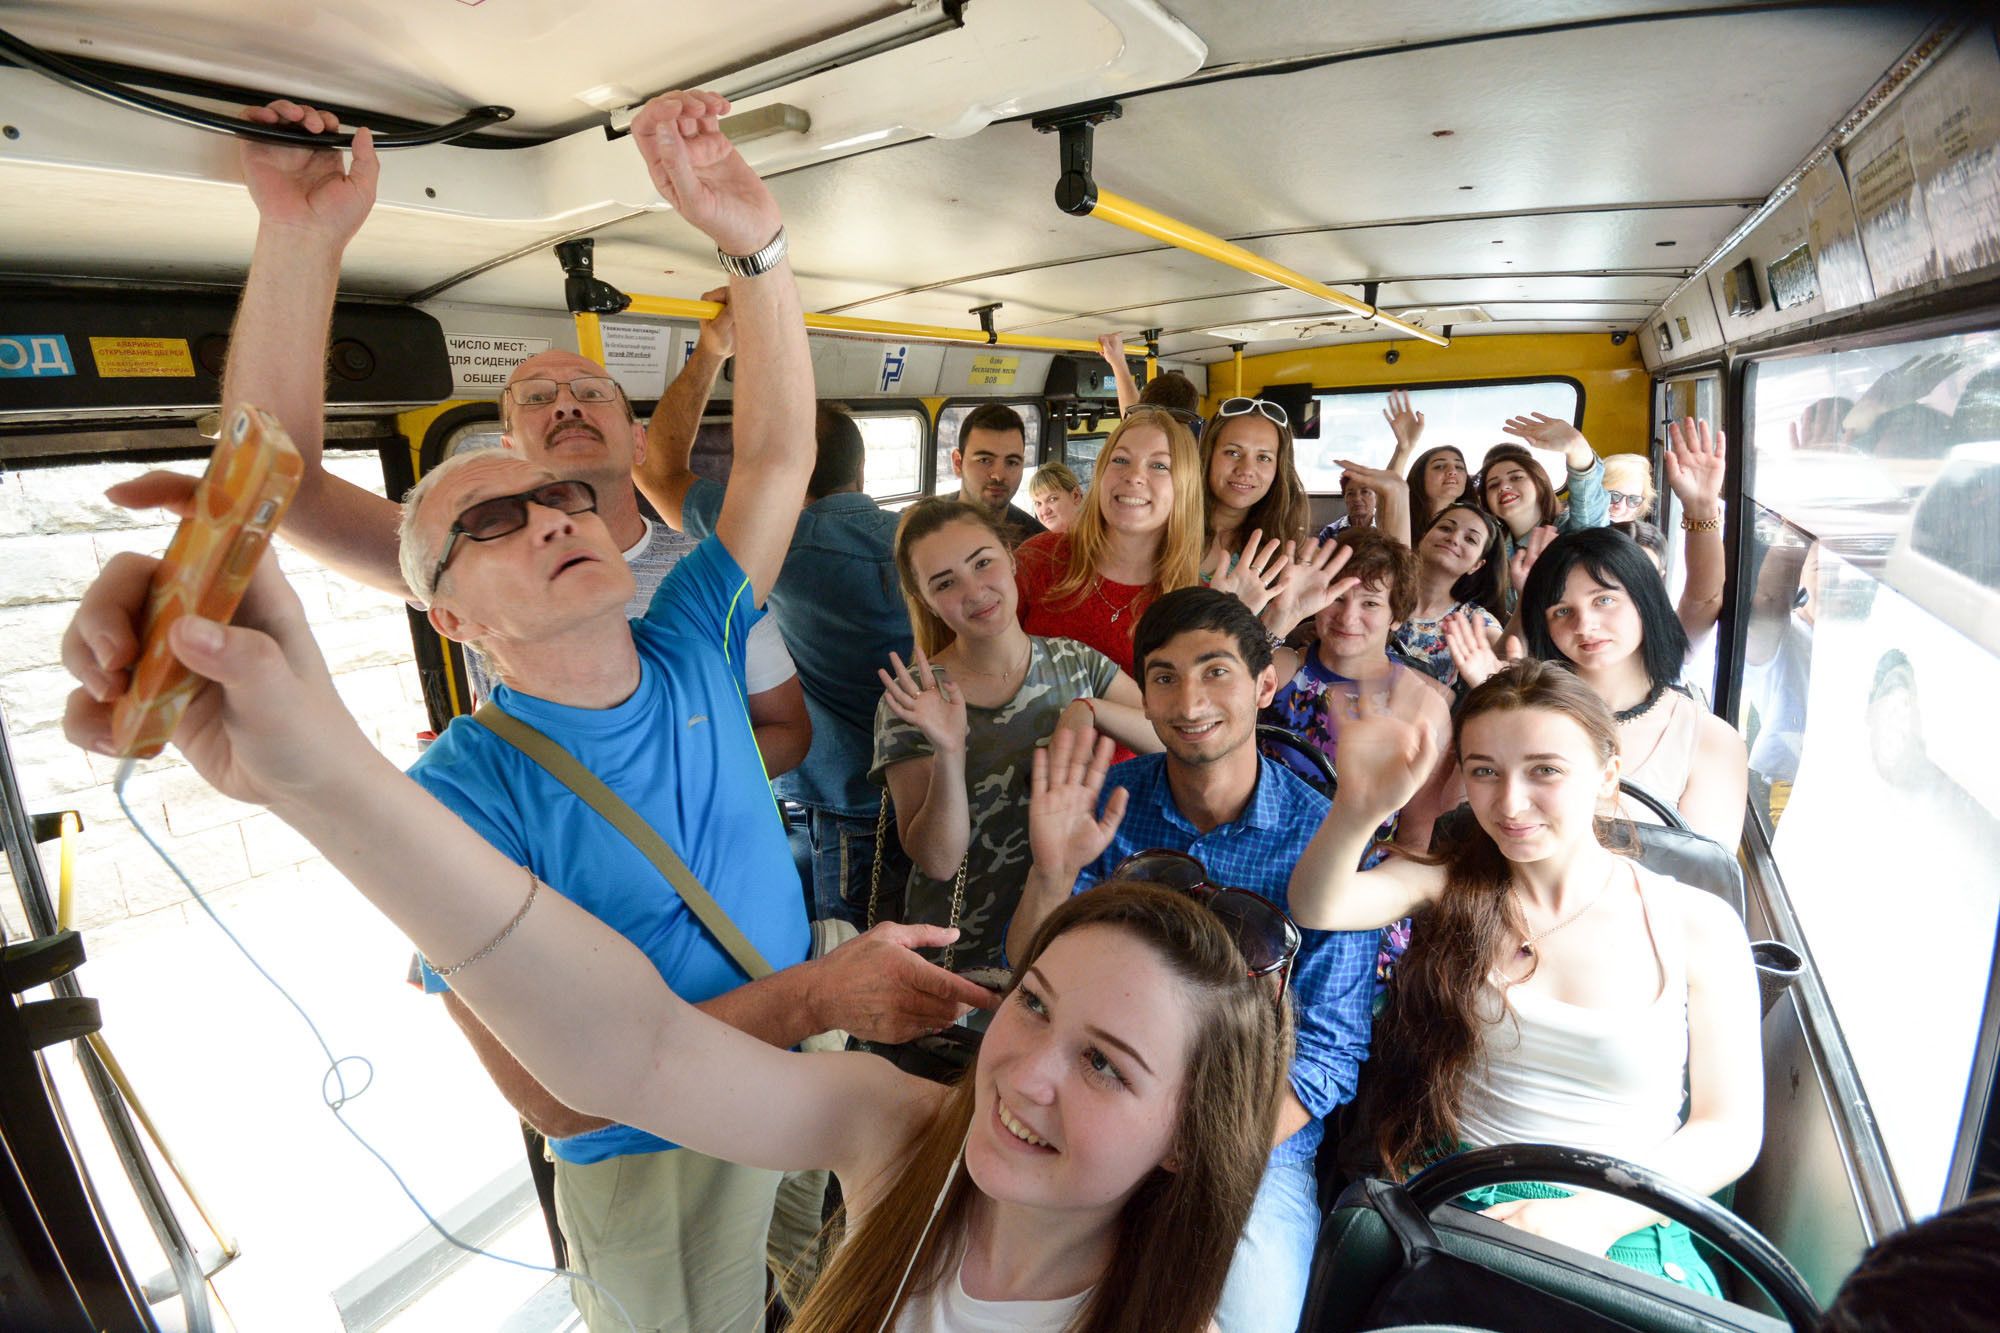 Отзывы автобусных экскурсиях. Экскурсия на автобусе. Поездка в общественном транспорте. Люди в туристическом автобусе. Автобус для путешествий.